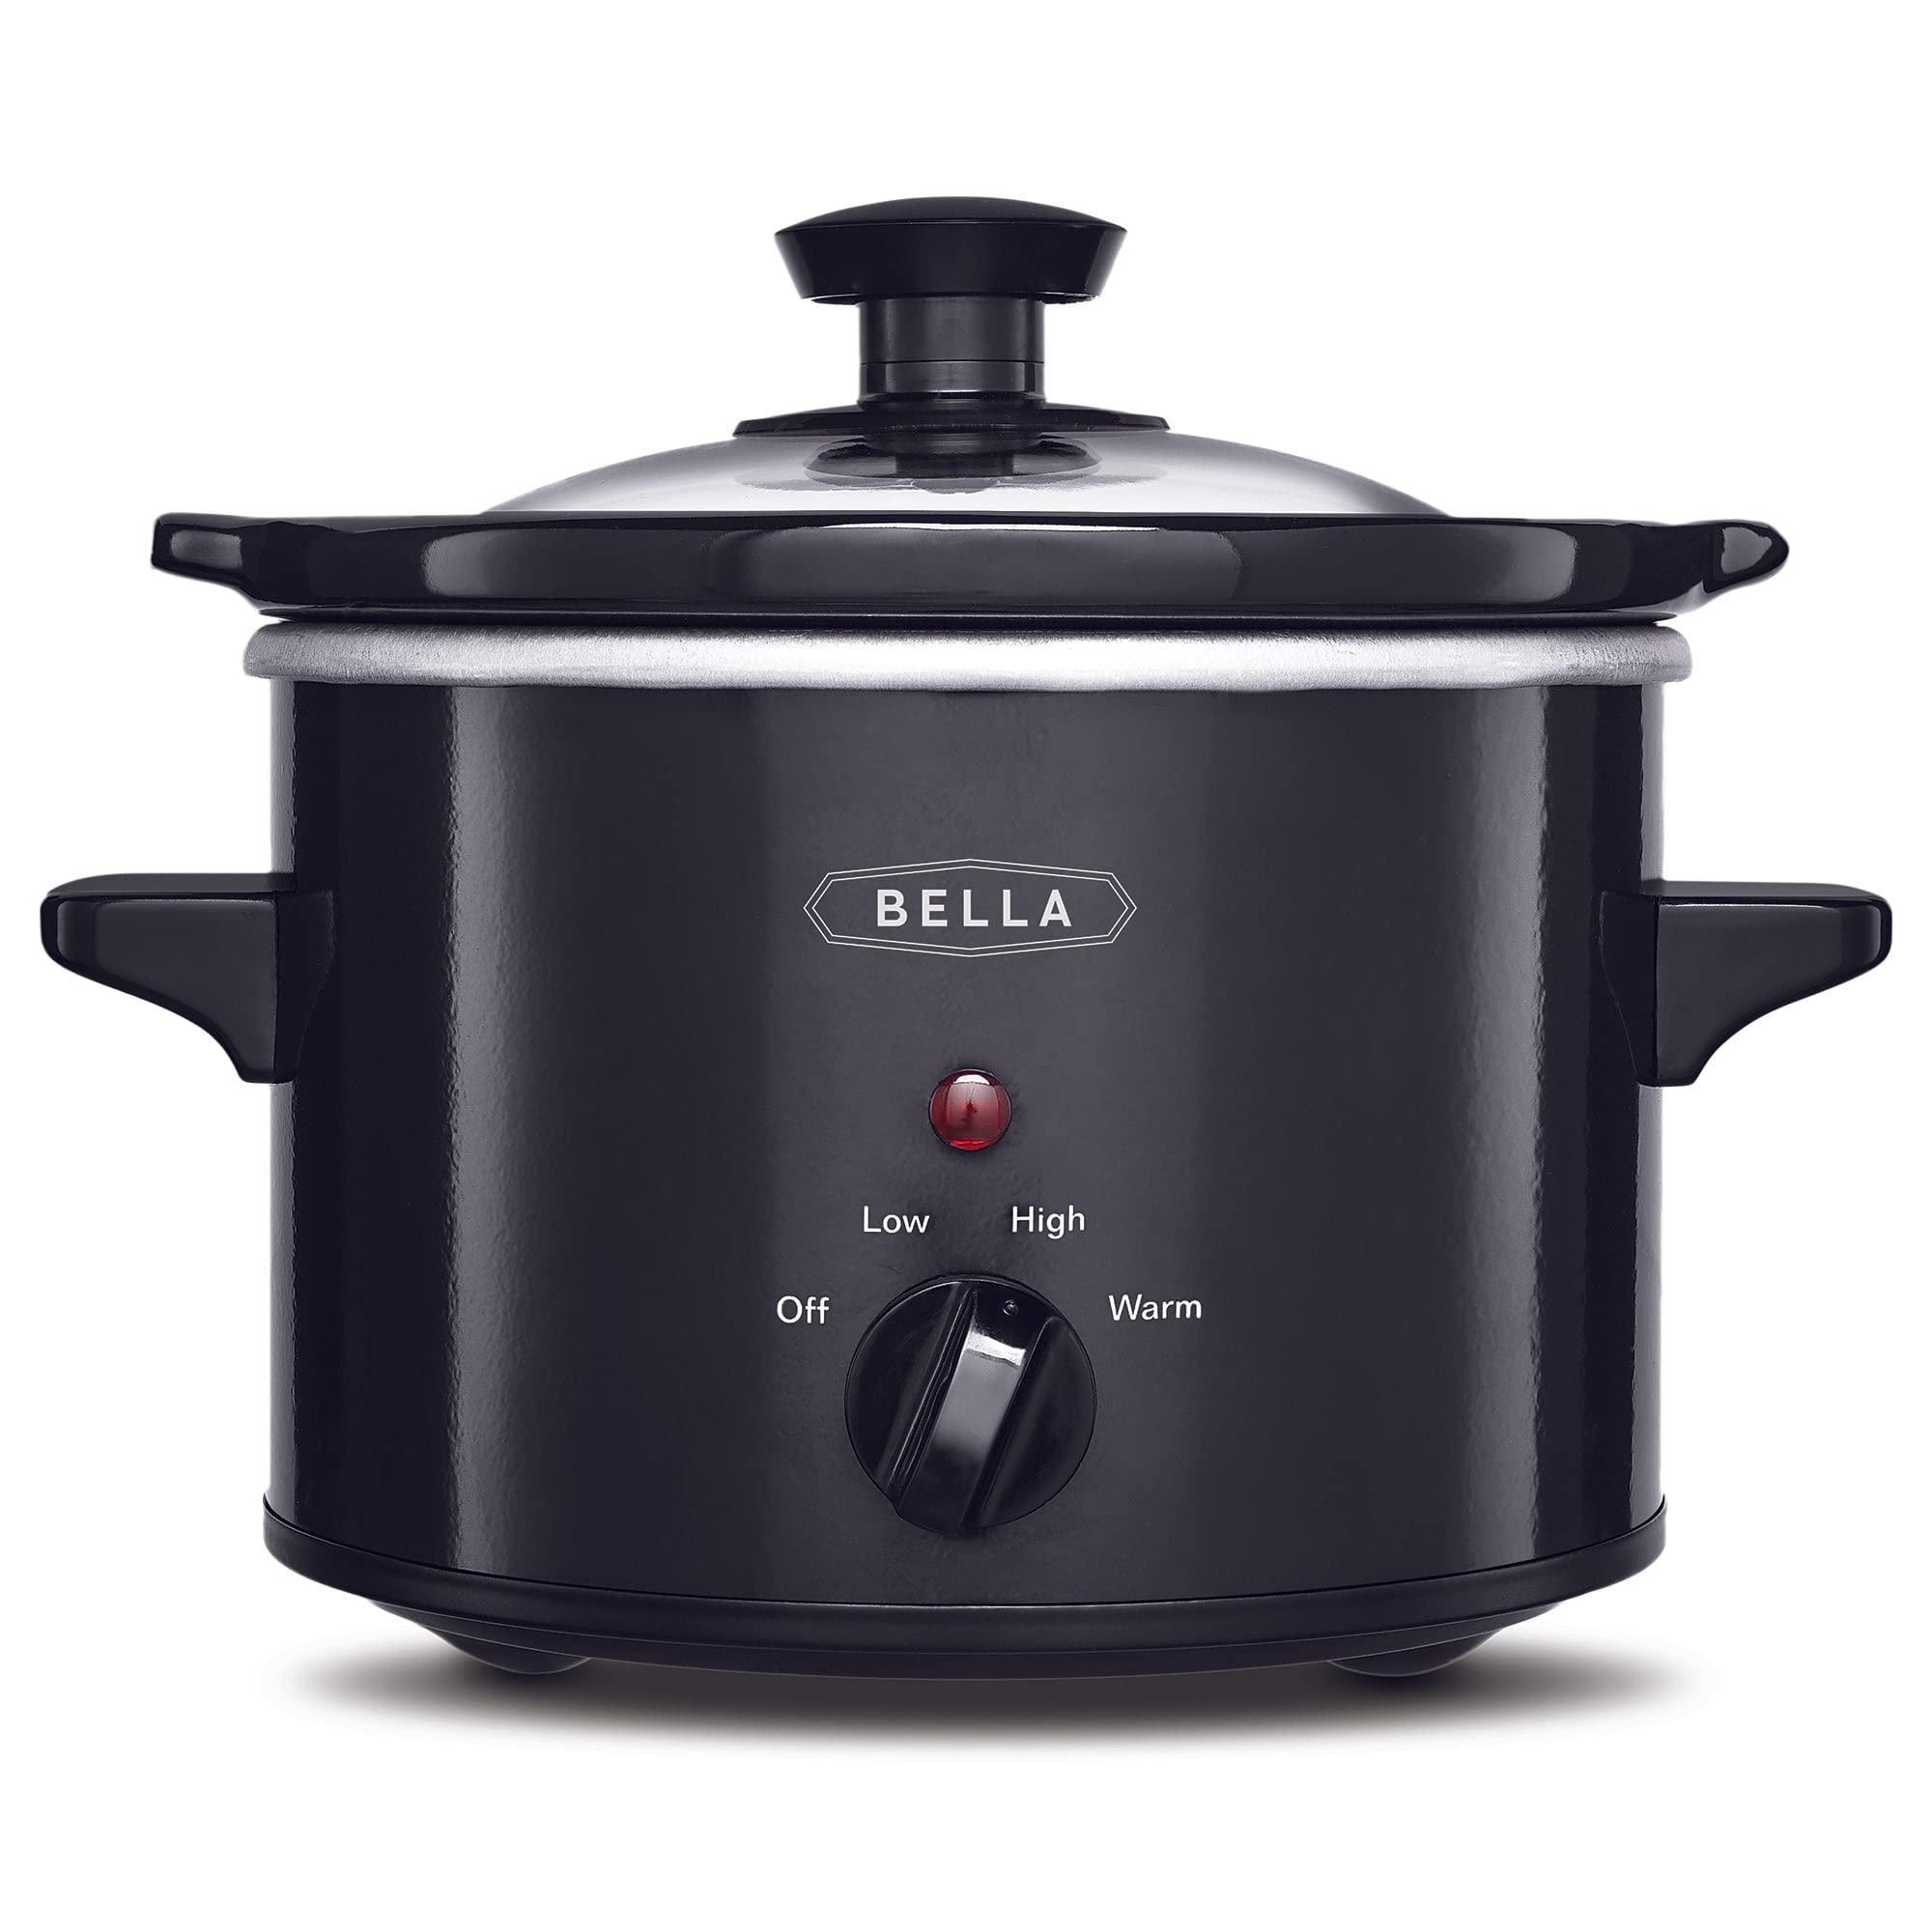 Bella 1.5qt slow cooker black